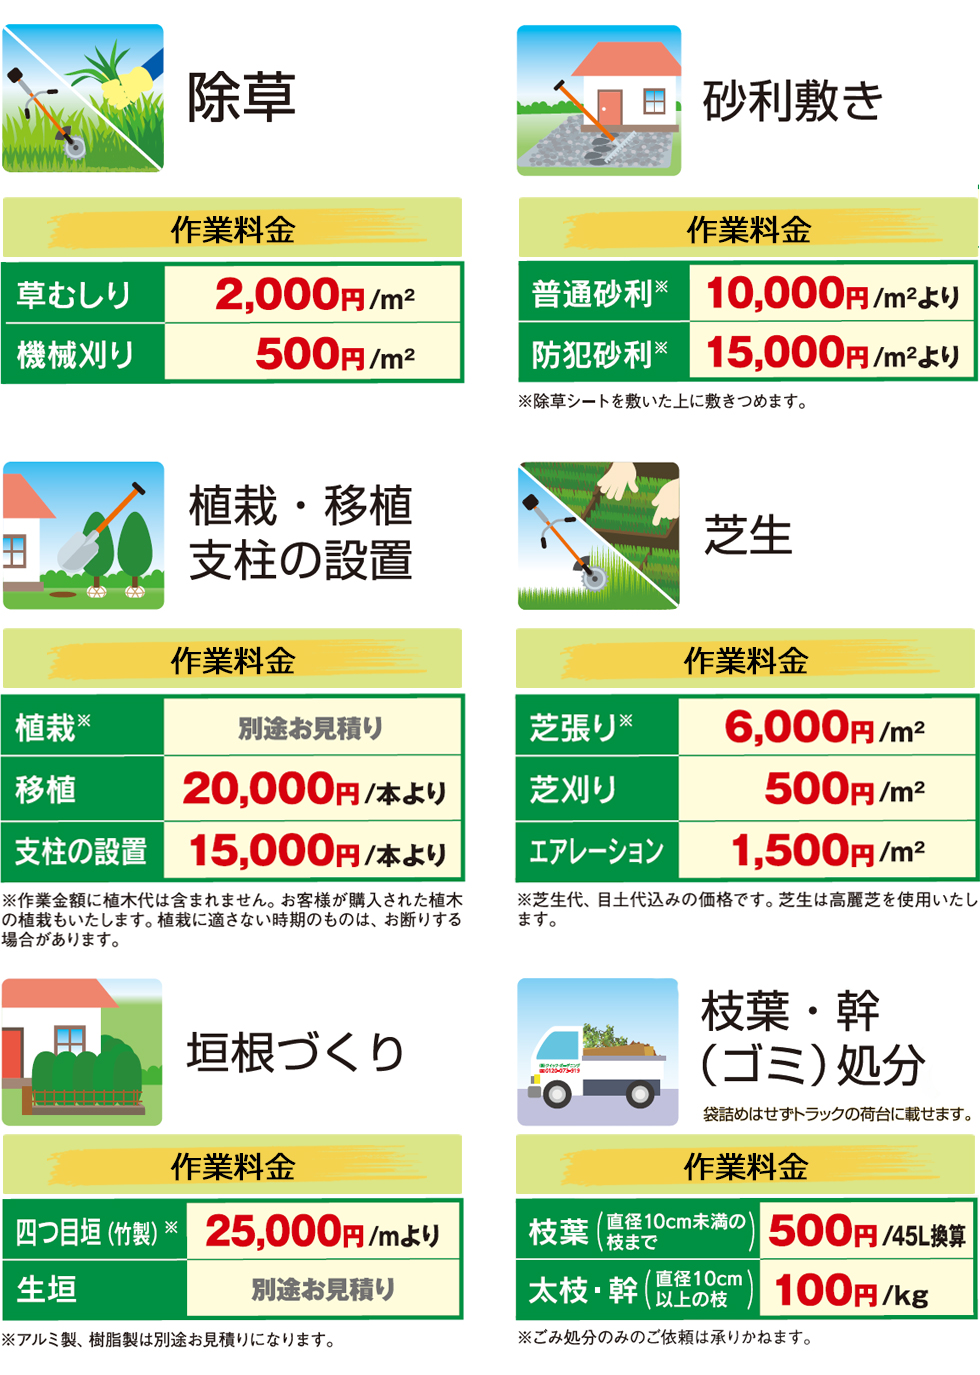 埼玉県の植木屋,除草,砂利敷き,垣根づくり,庭造り